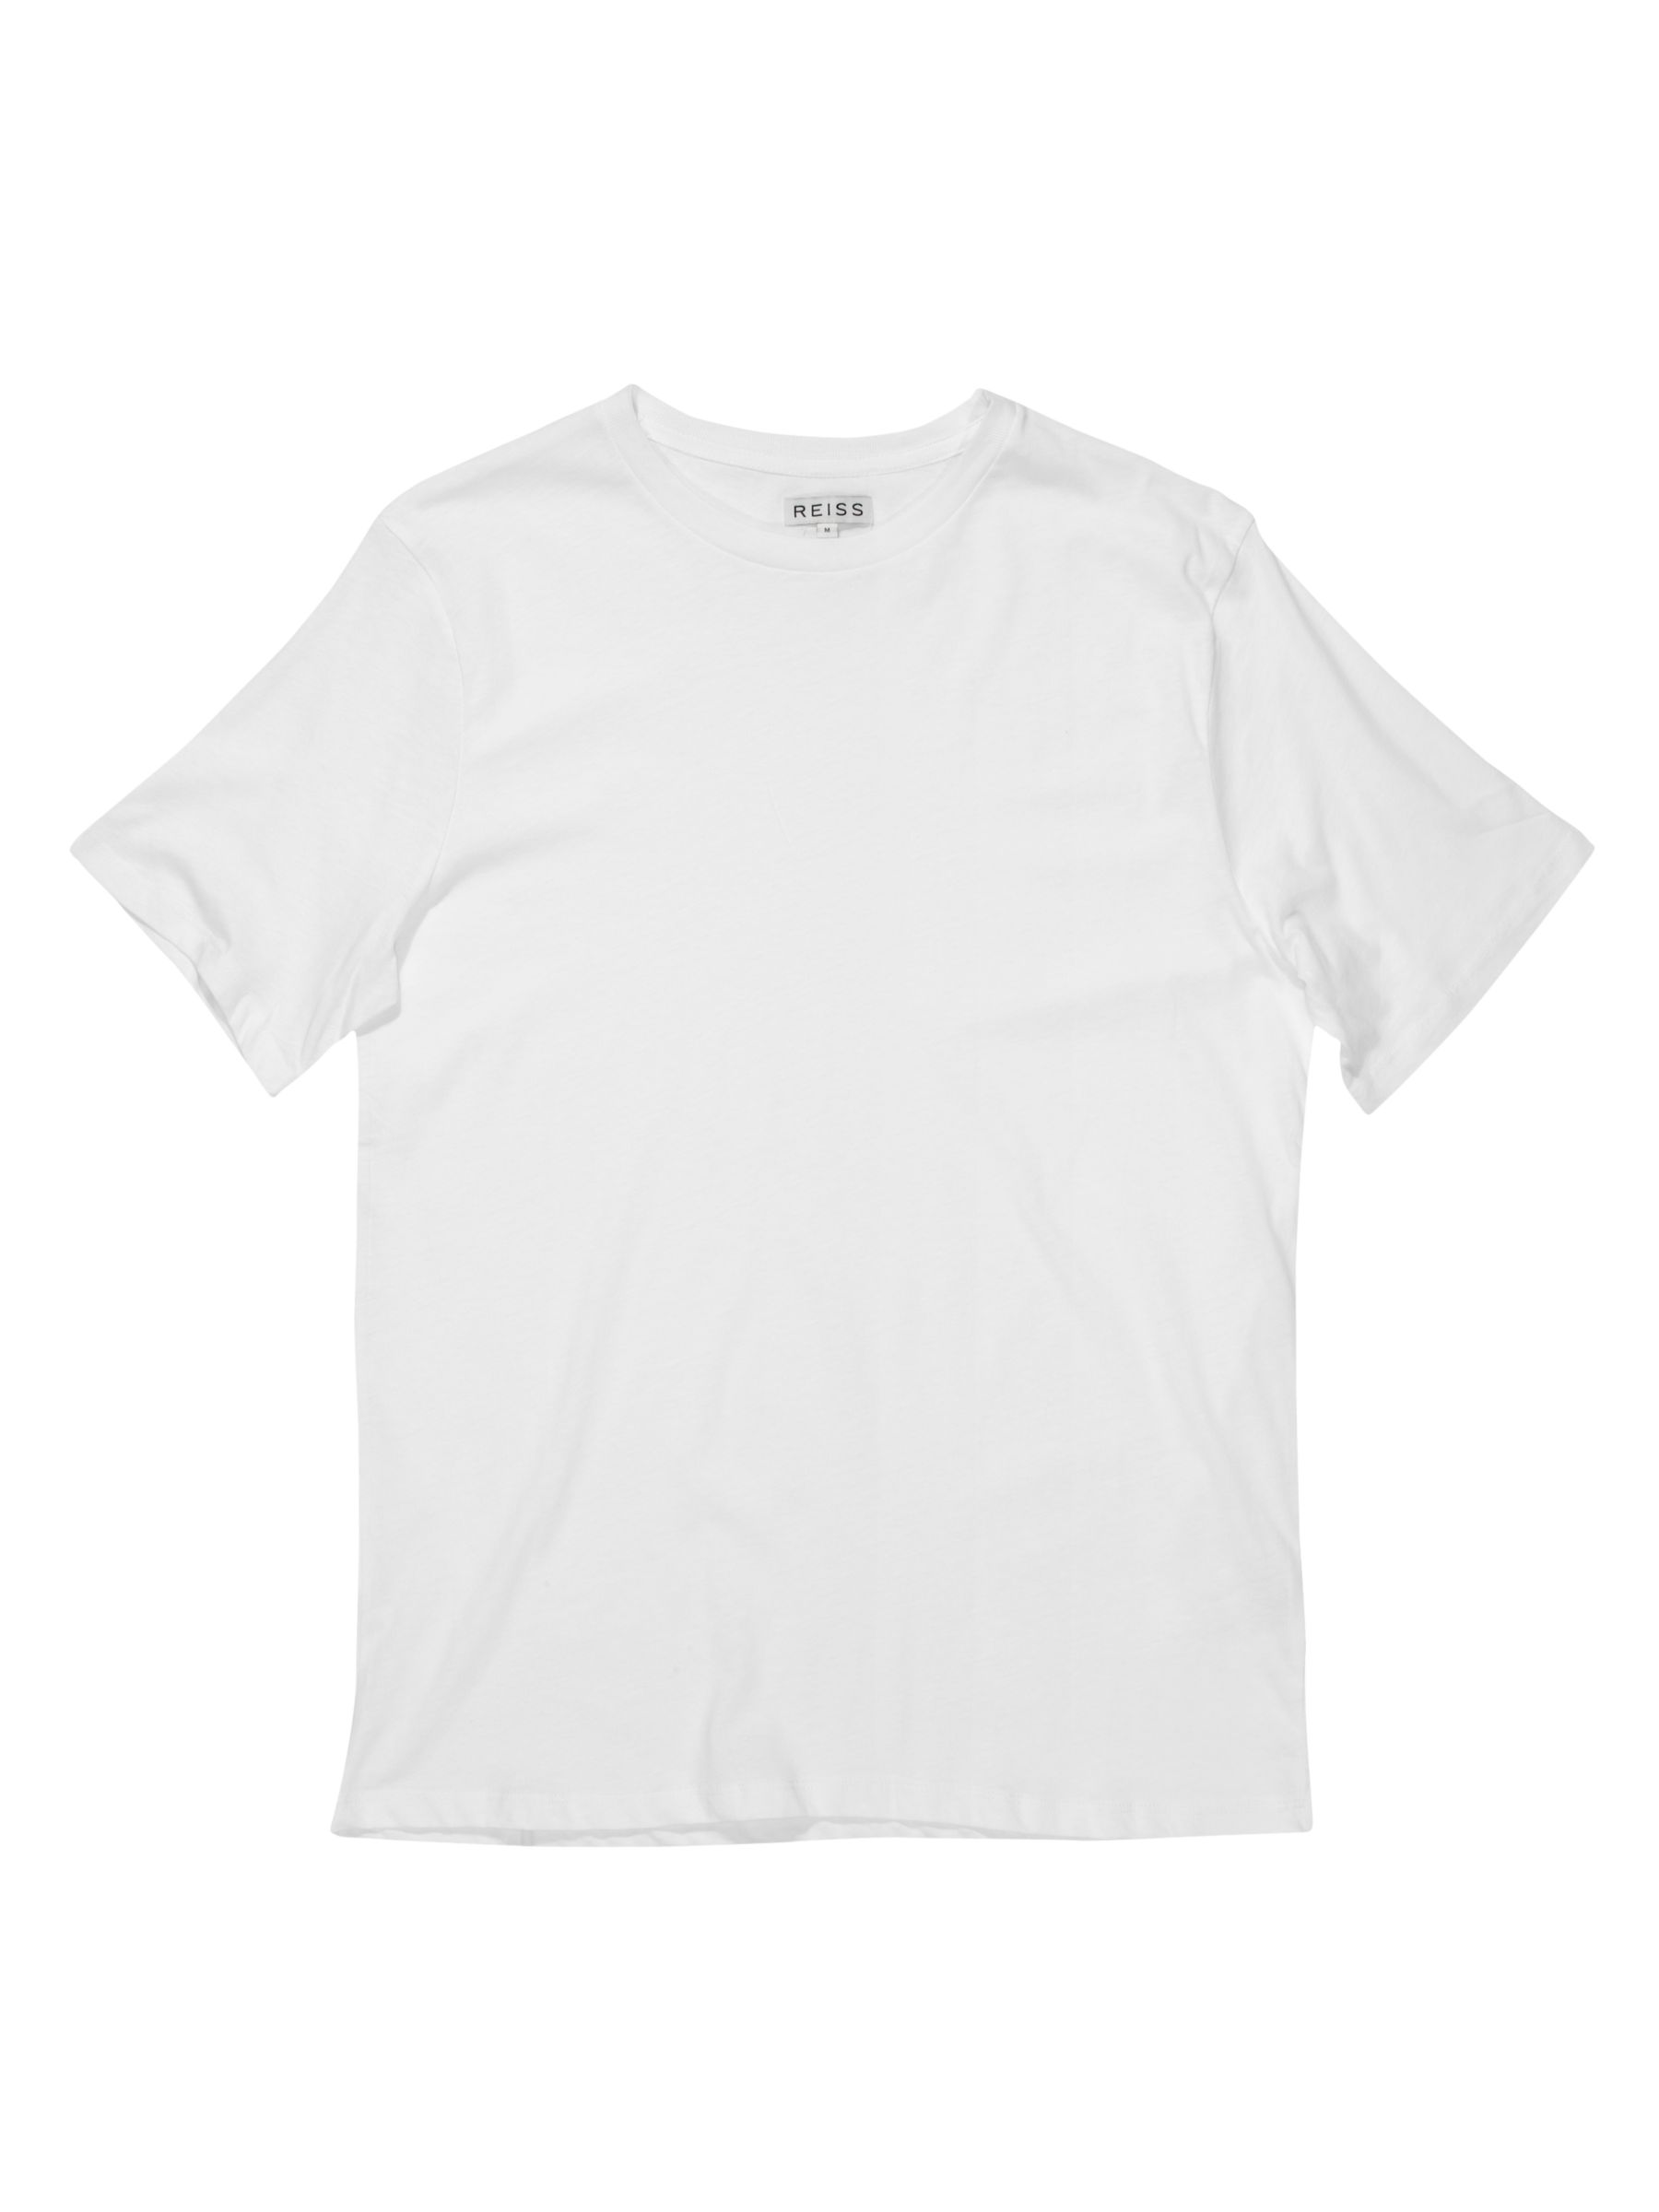 Reiss Bless Basic Crew Neck T-Shirt, White